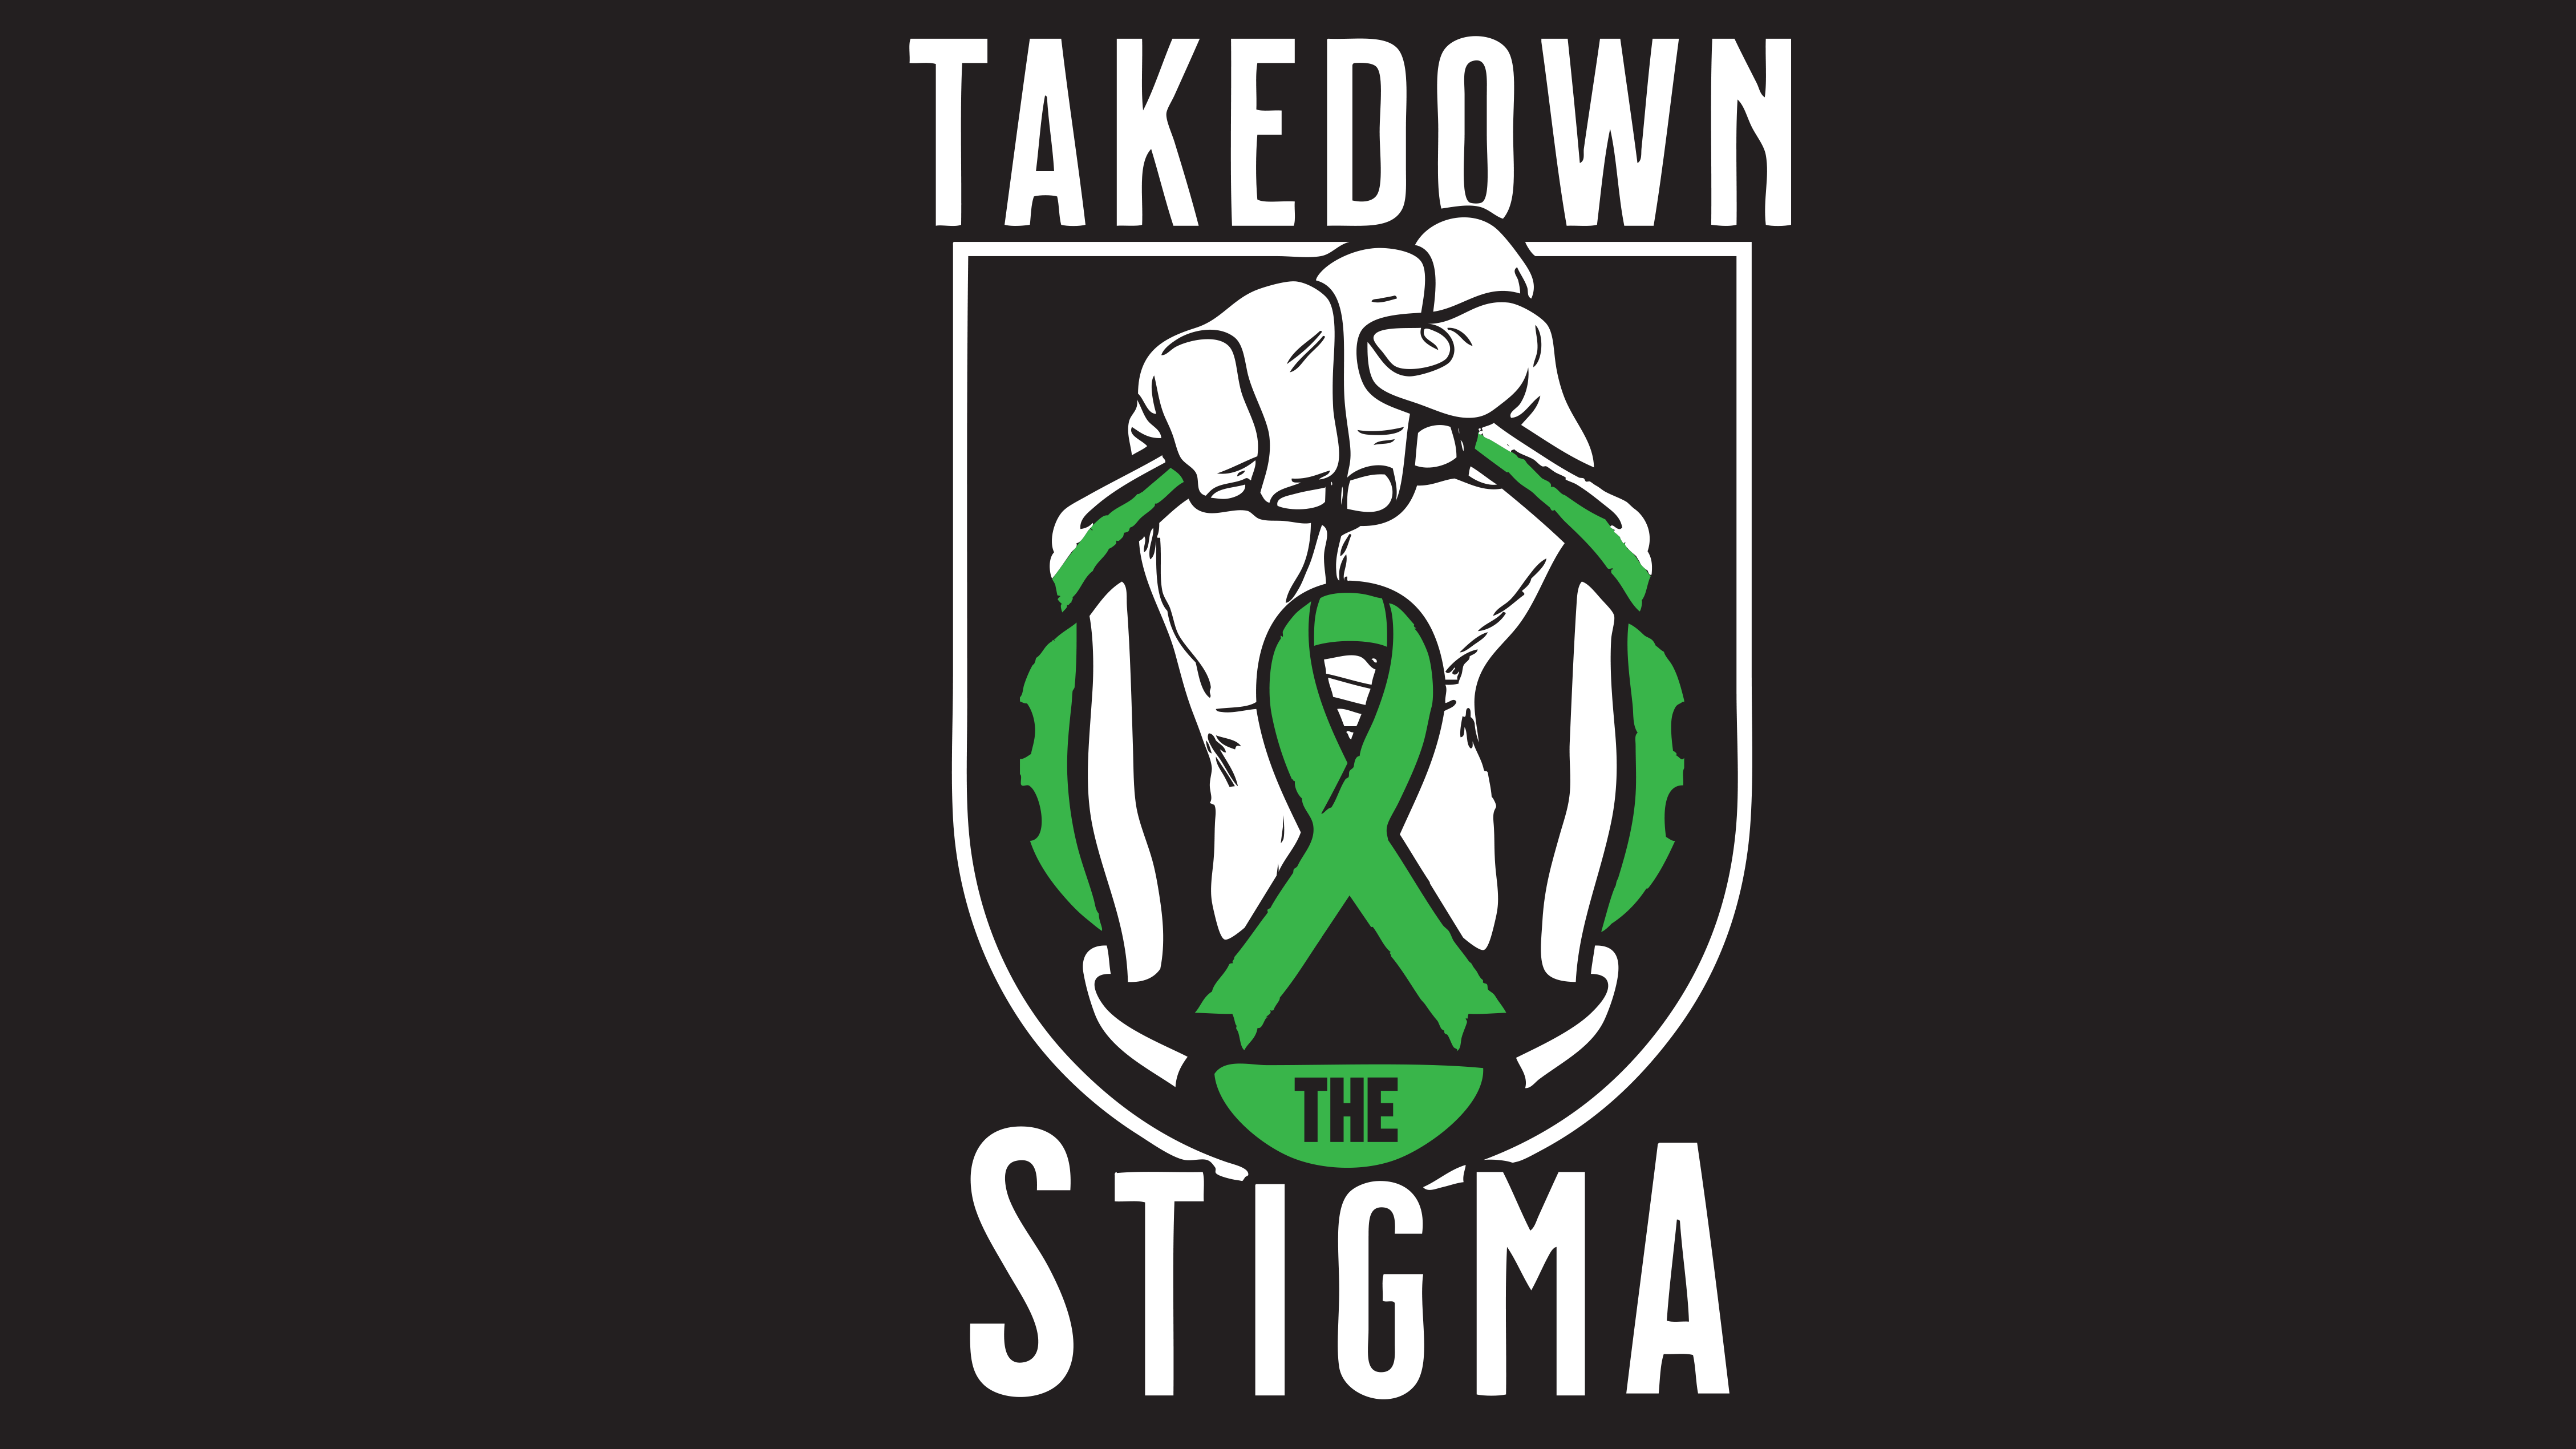 Takedown The Stigma